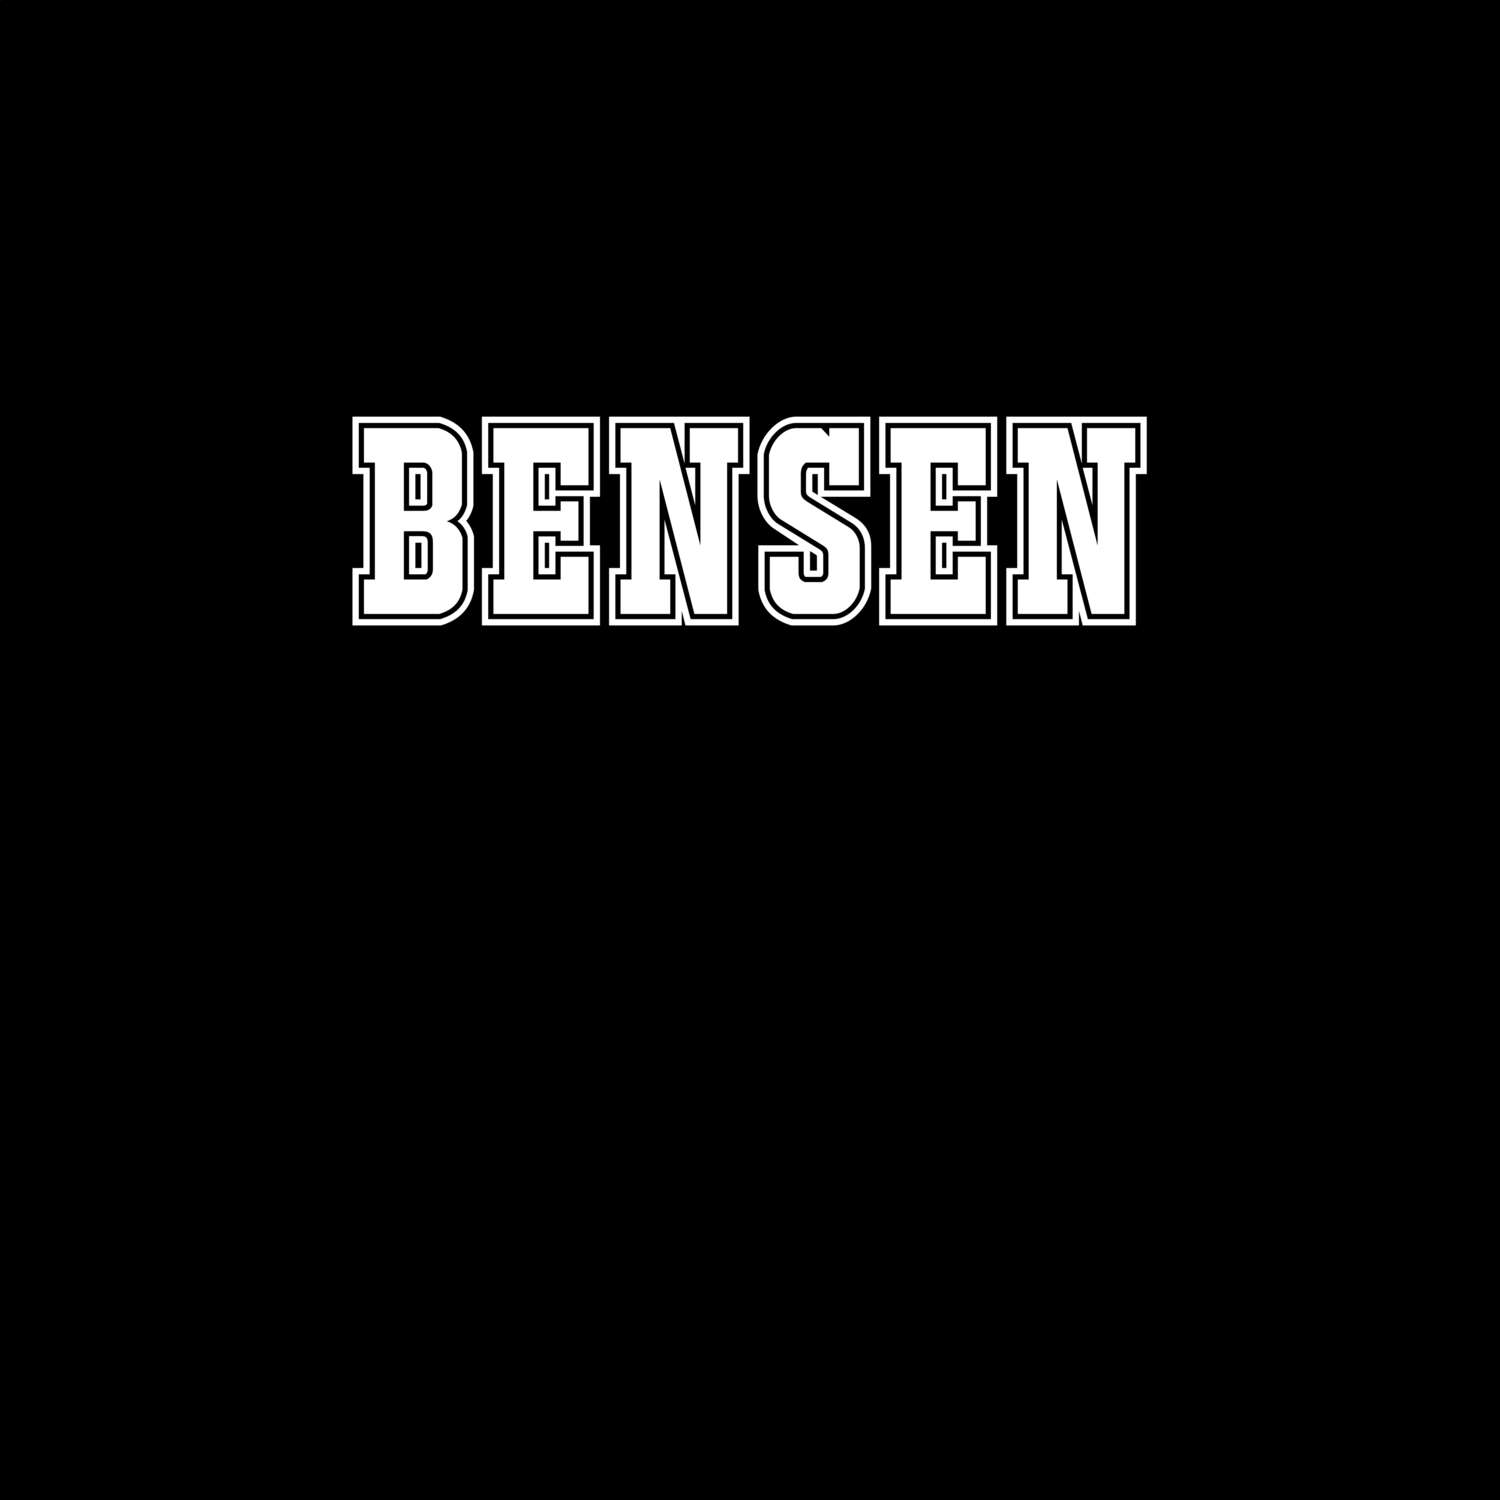 Bensen T-Shirt »Classic«